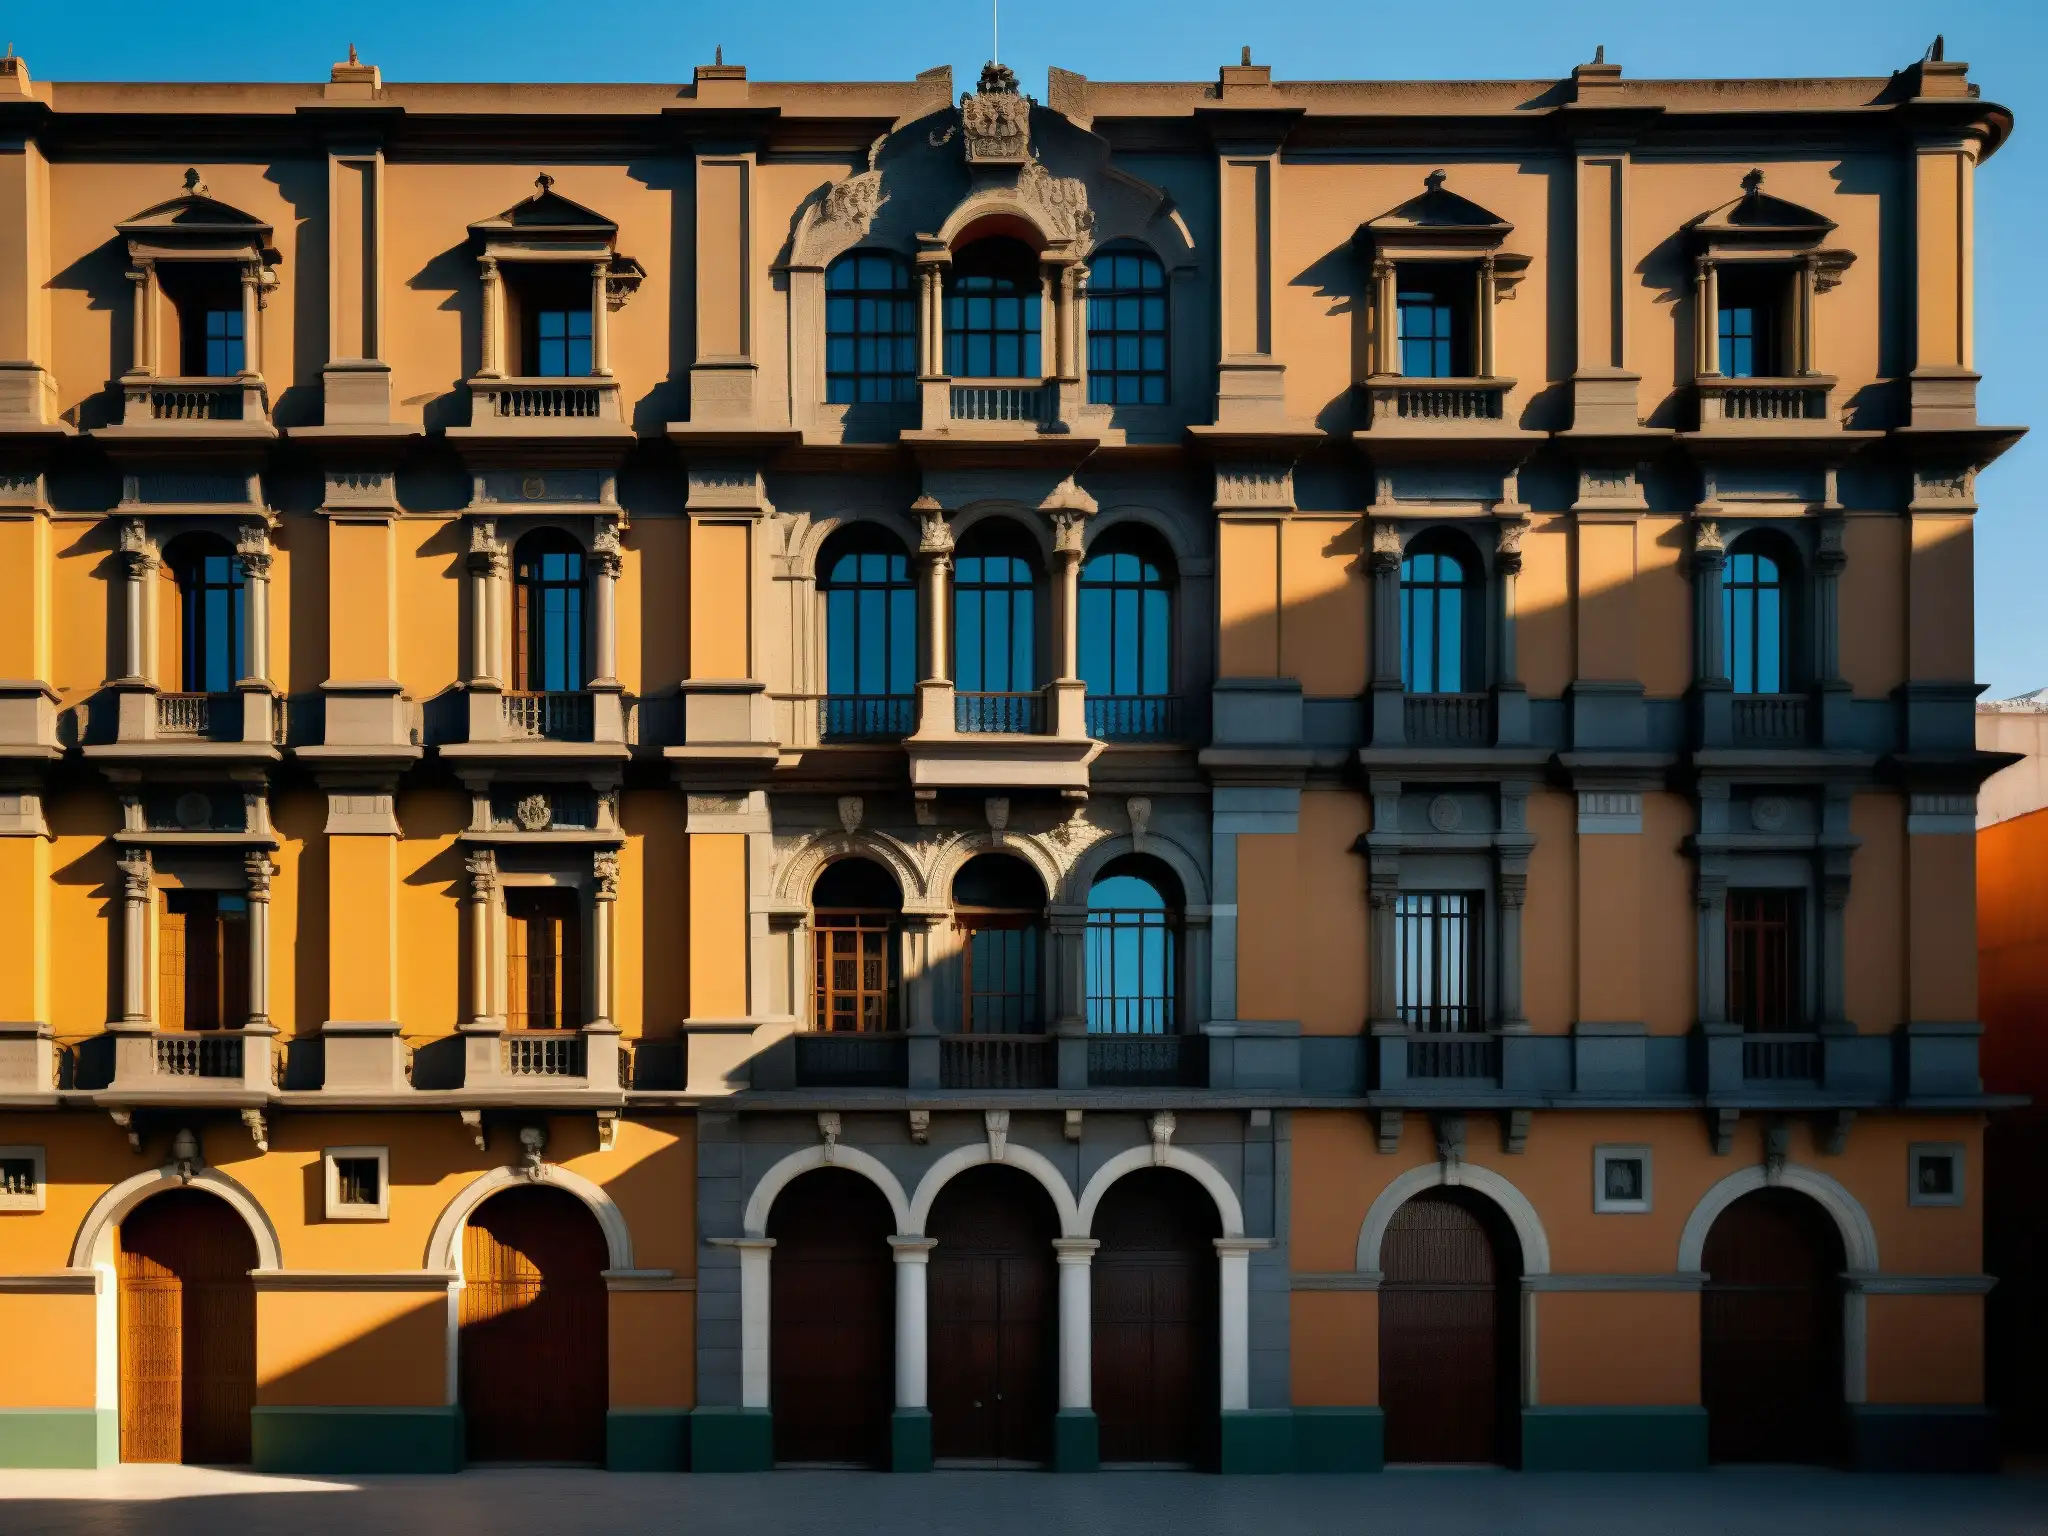 El imponente Palacio de Lecumberri evoca el Fantasma del Palacio de Lecumberri con su atmósfera histórica y solemnidad